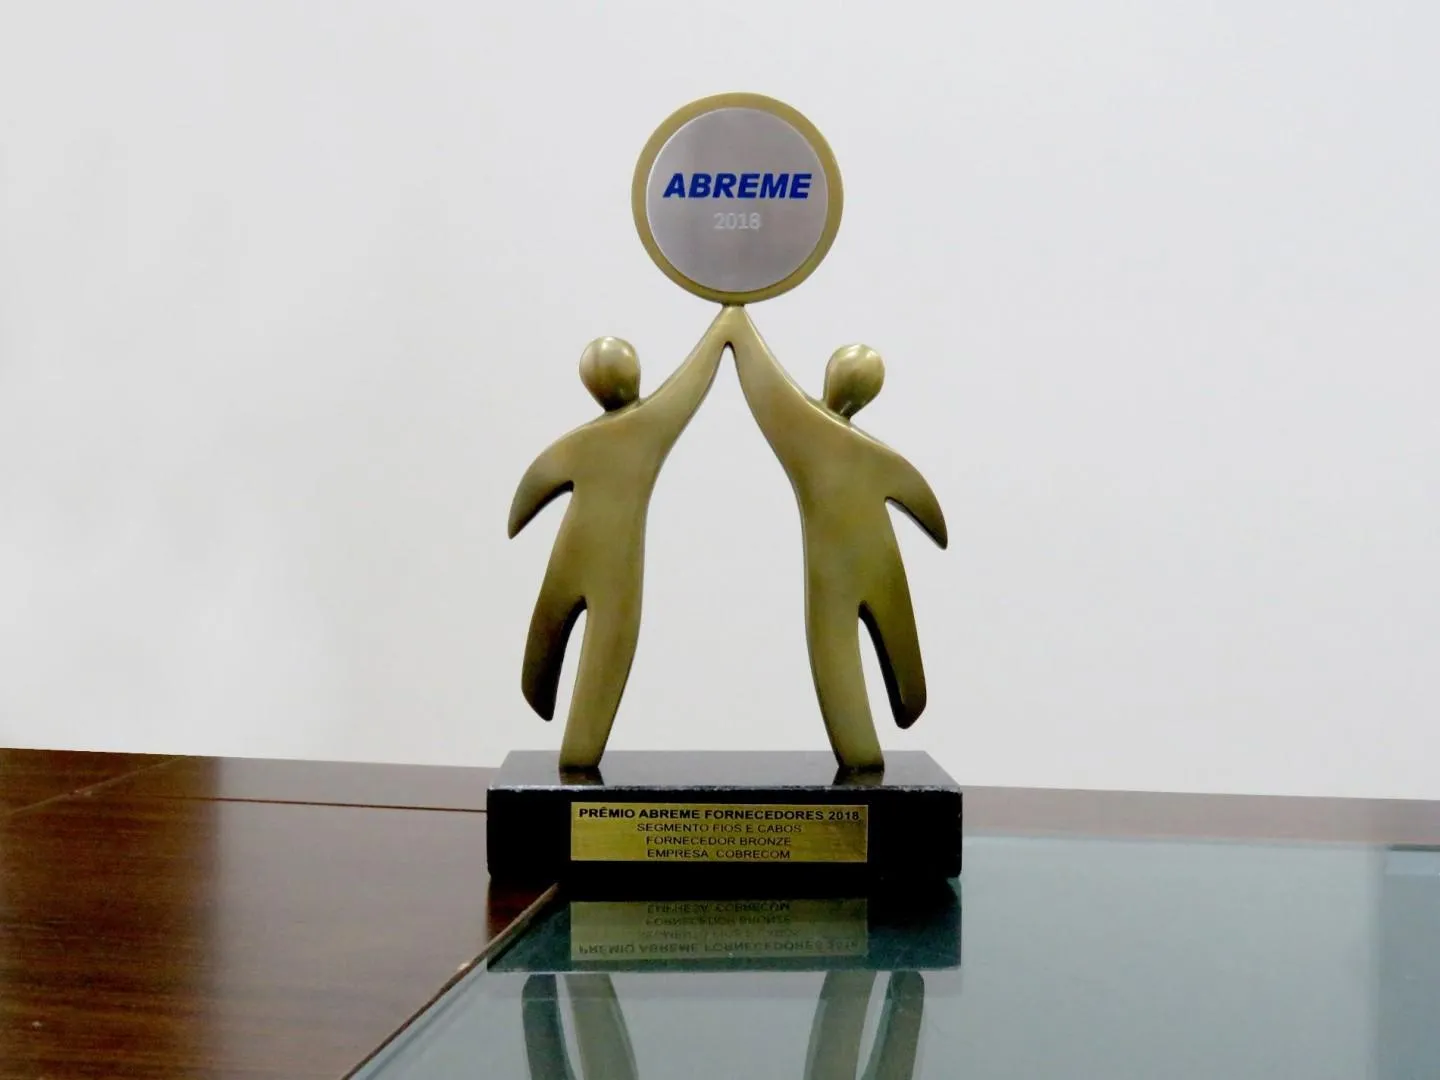 Prêmio Abreme 2018: IFC/COBRECOM conquista o Troféu Bronze no Segmento | Cobrecom